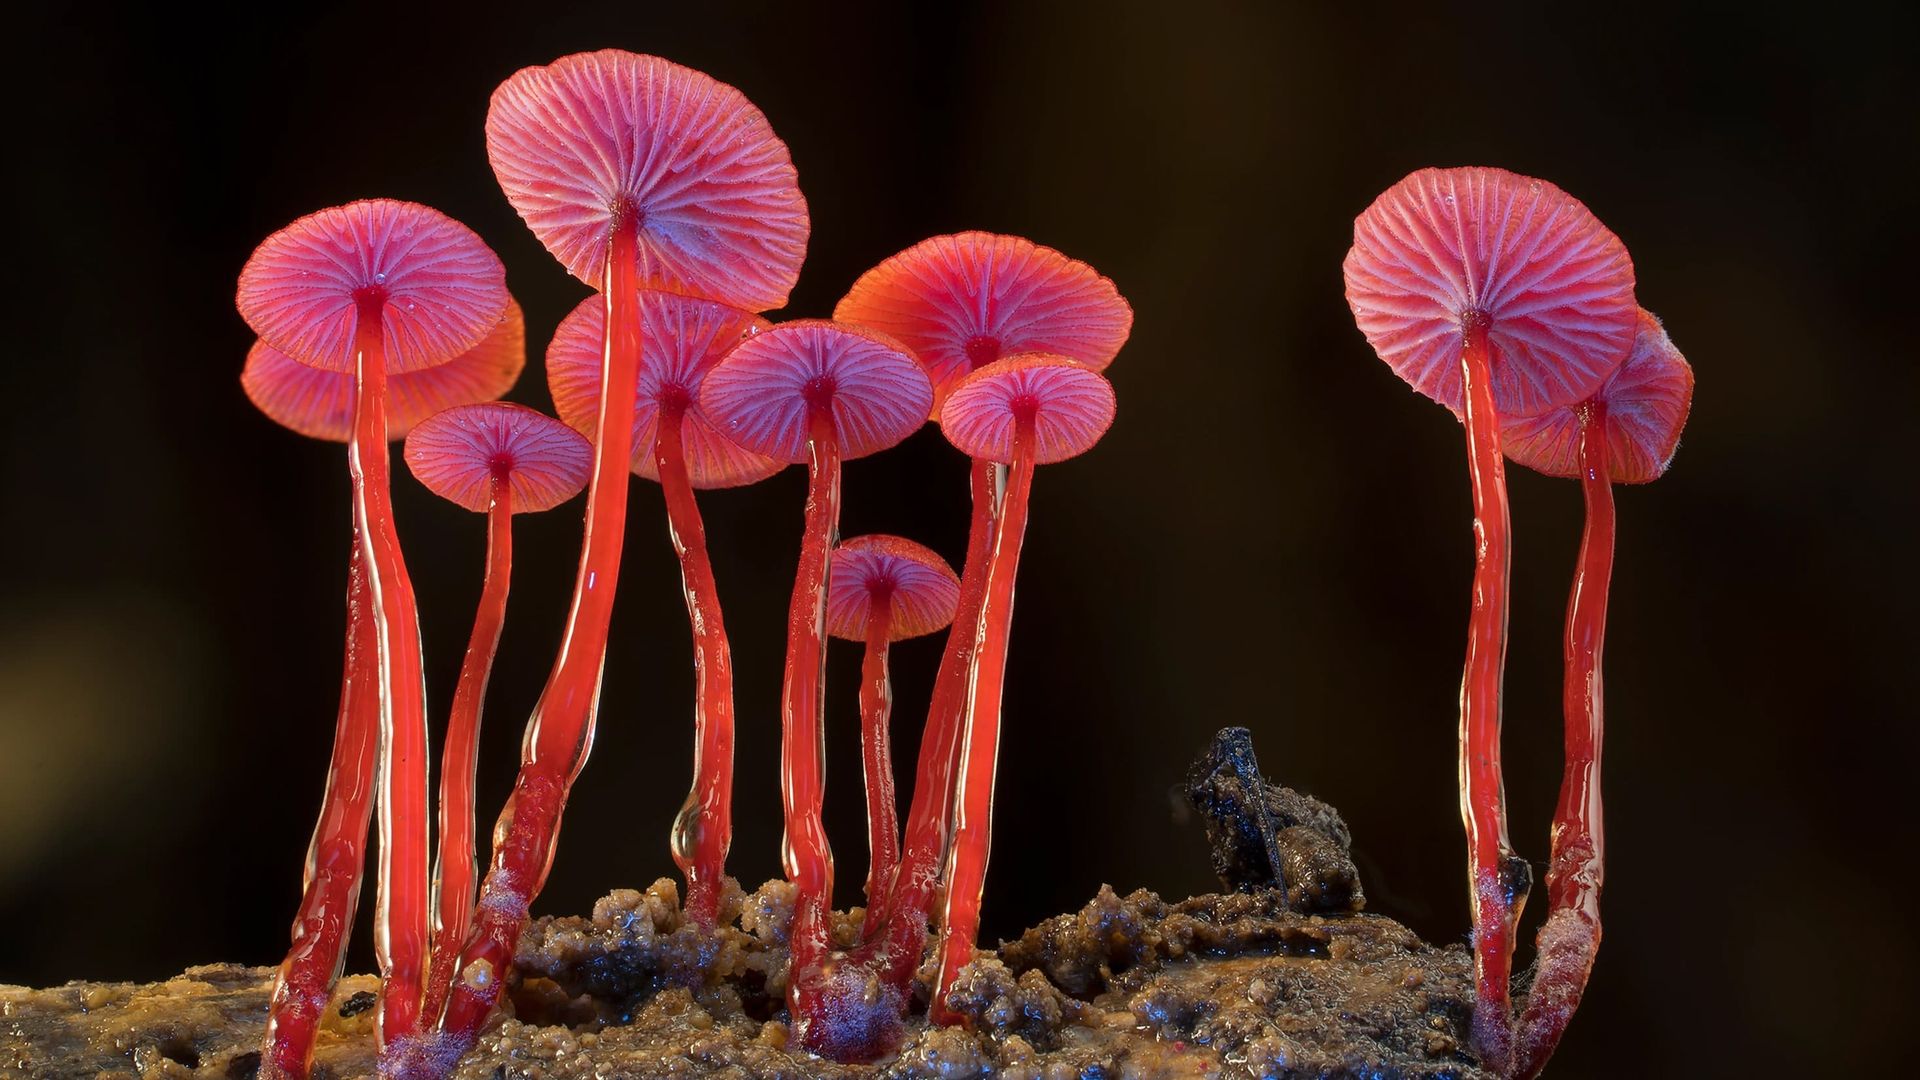 Fungi: The Web of Life background